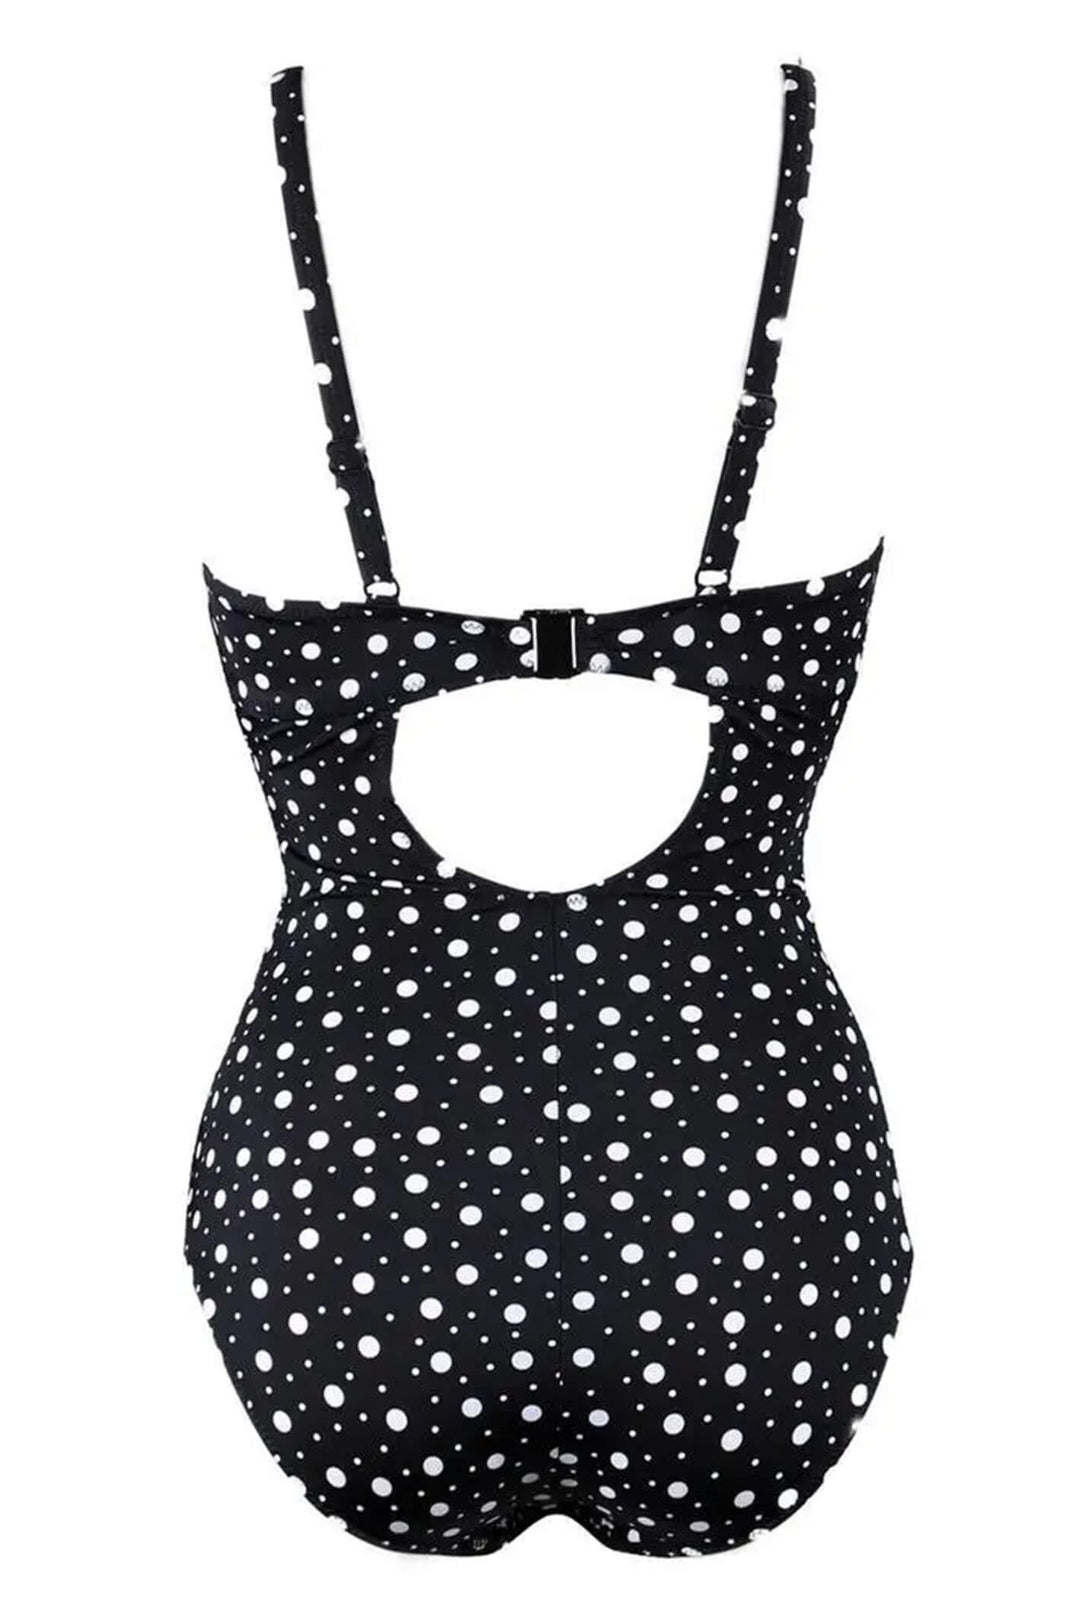 Pour Moi PM14306 Mini Maxi Frill Control Black & White Swimsuit - Shirley Allum Boutique